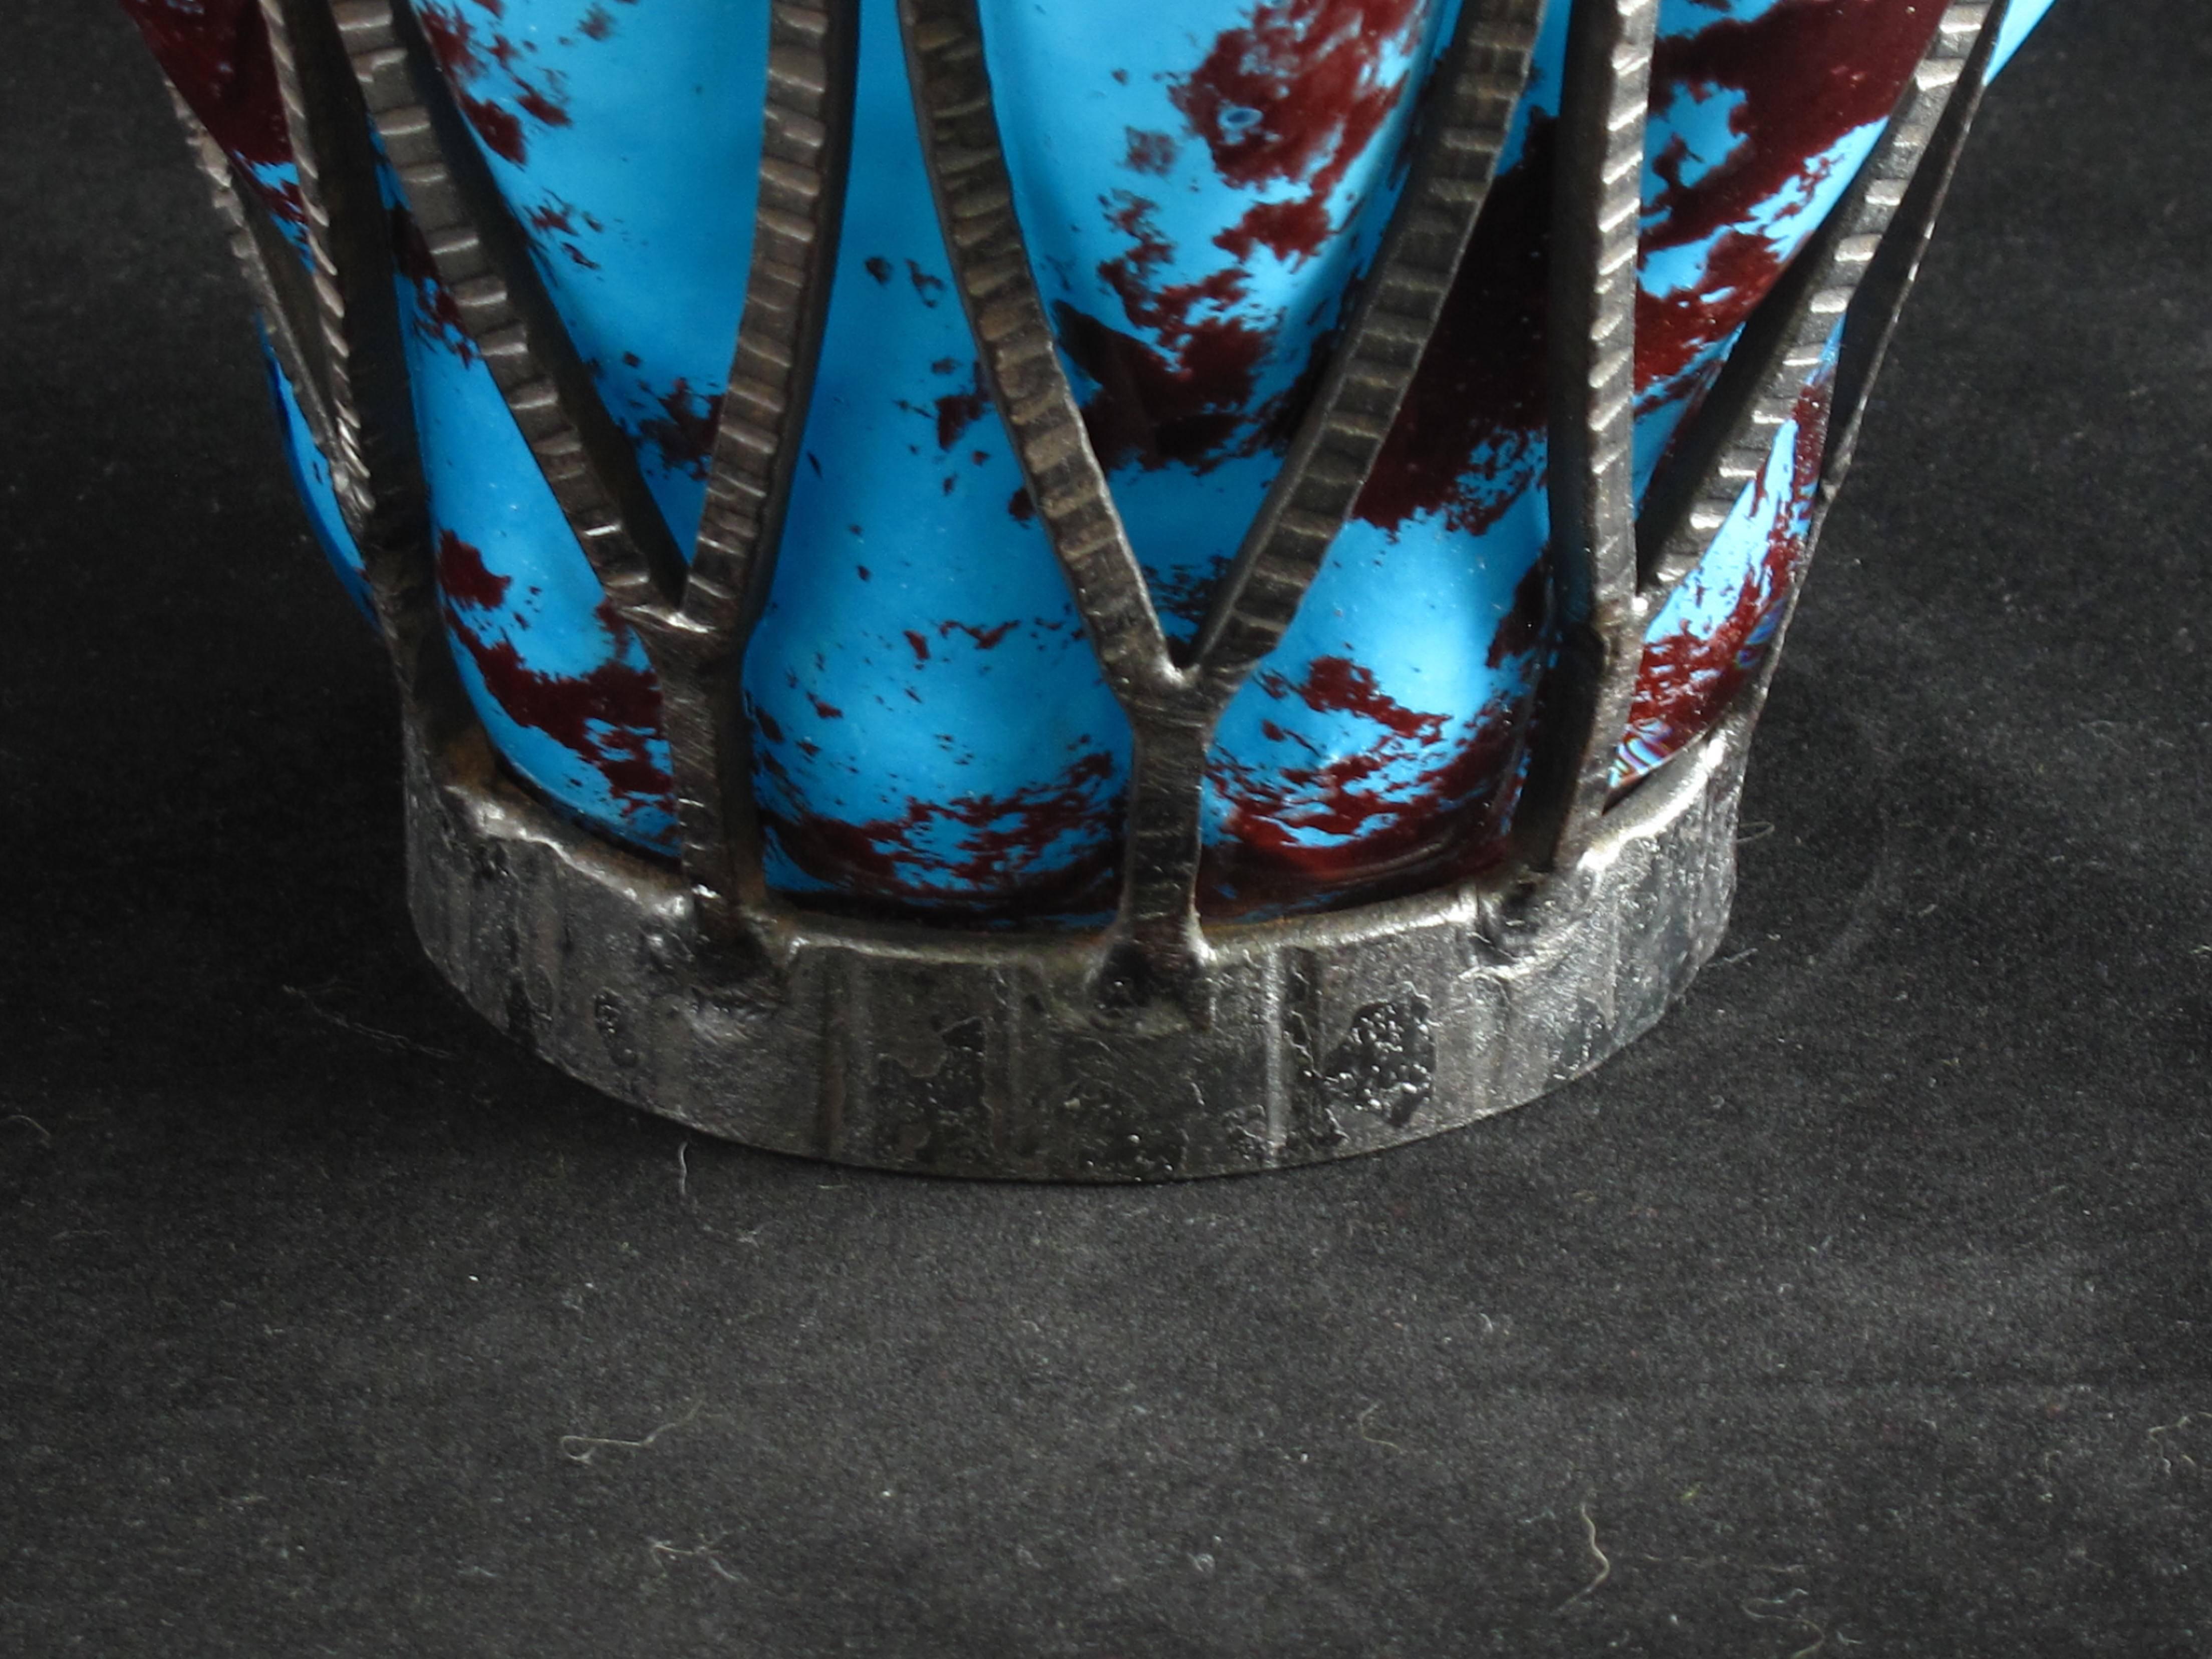 Un grand vase Art Déco en verre tacheté et emboîté soufflé dans une armature en fer forgé. Signature gravée sur la base Daum Nancy et Louis Majorelle, français, vers 1920. Une couleur étonnante.

En 1878, Jean Daum (1825-1885) rachète la verrerie